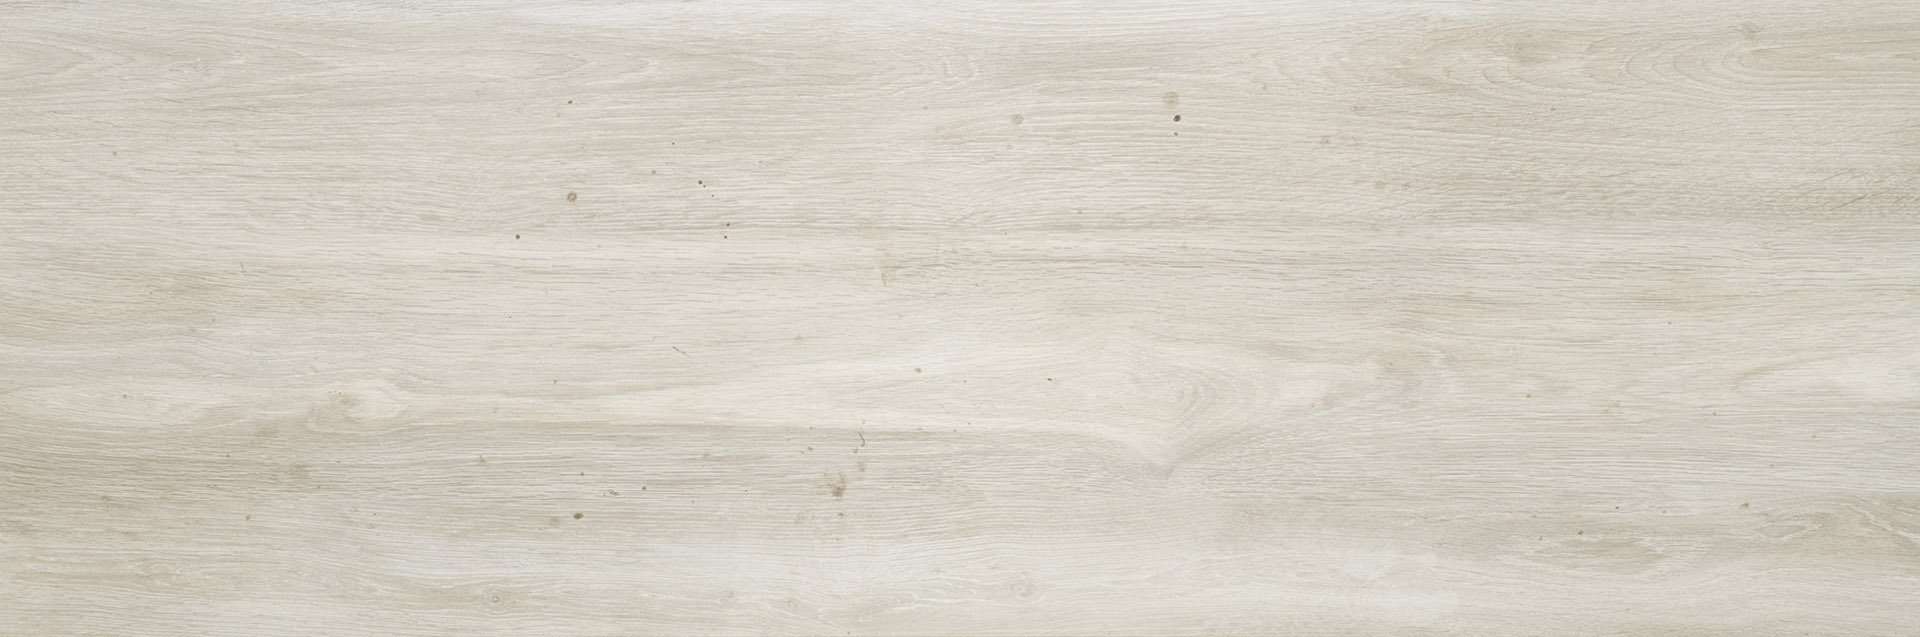 Tauro bianco - dlaždice rektifikovaná 39,7x119,7 bílá, 2 cm 160426